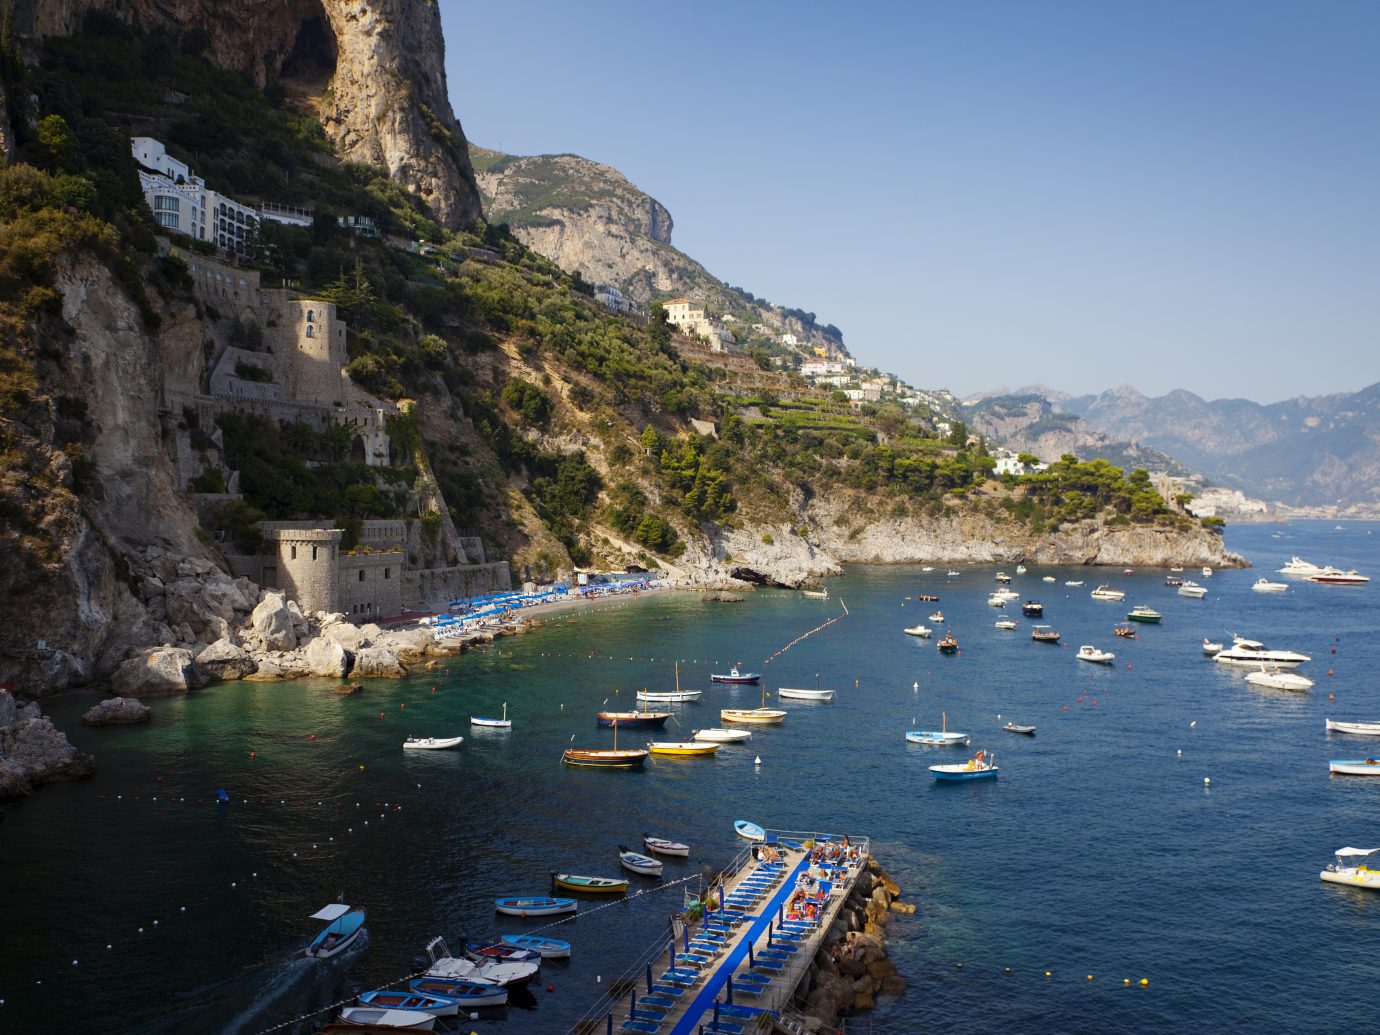 "The beautiful Amalfi Coast, Conca Dei Marini Bay, Italy."